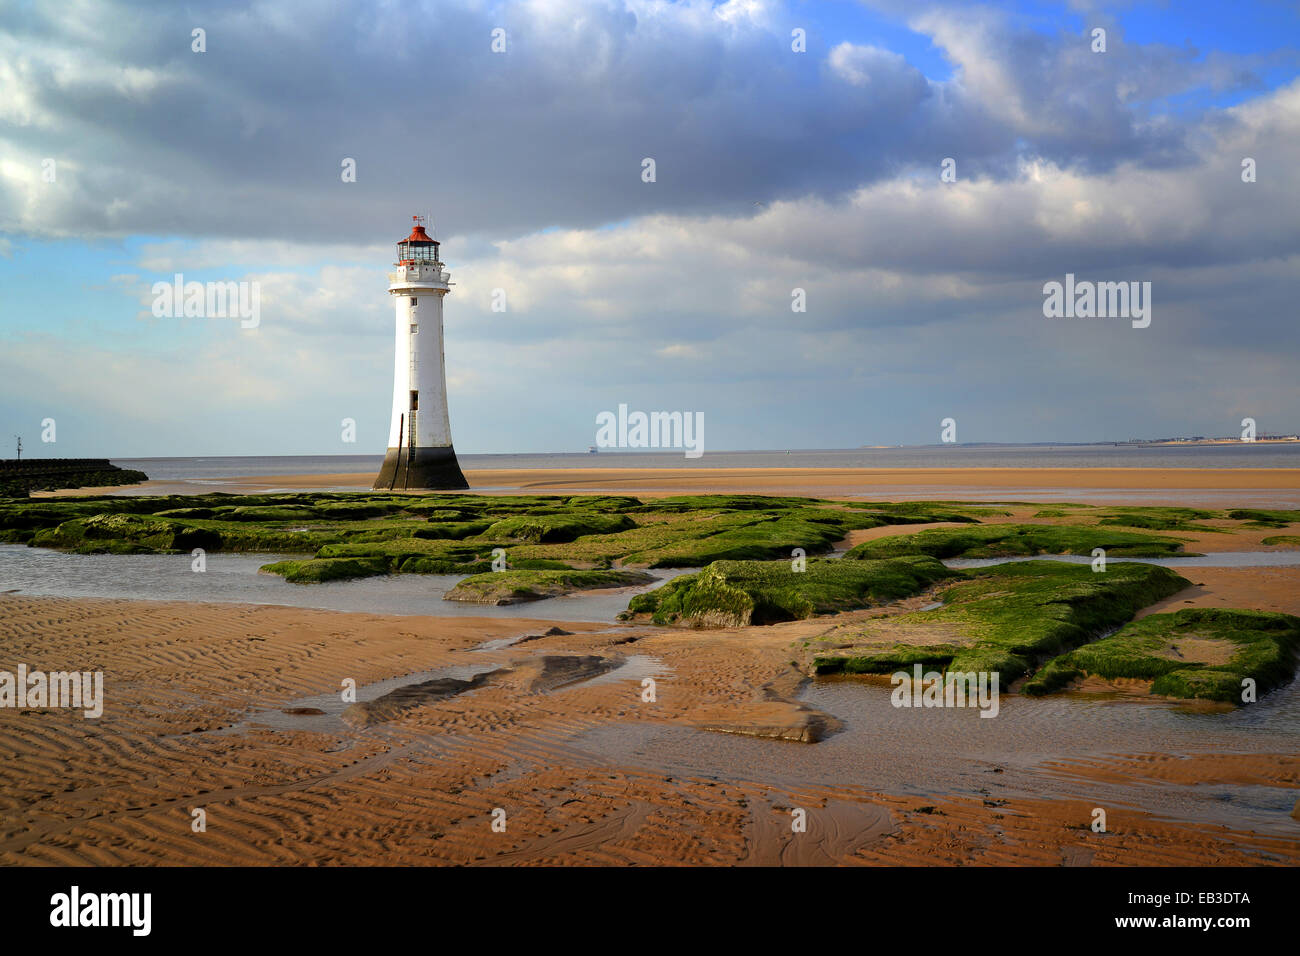 UK, England, Merseyside, Wirral, Newbrighton, Lighthouse on shore Stock Photo